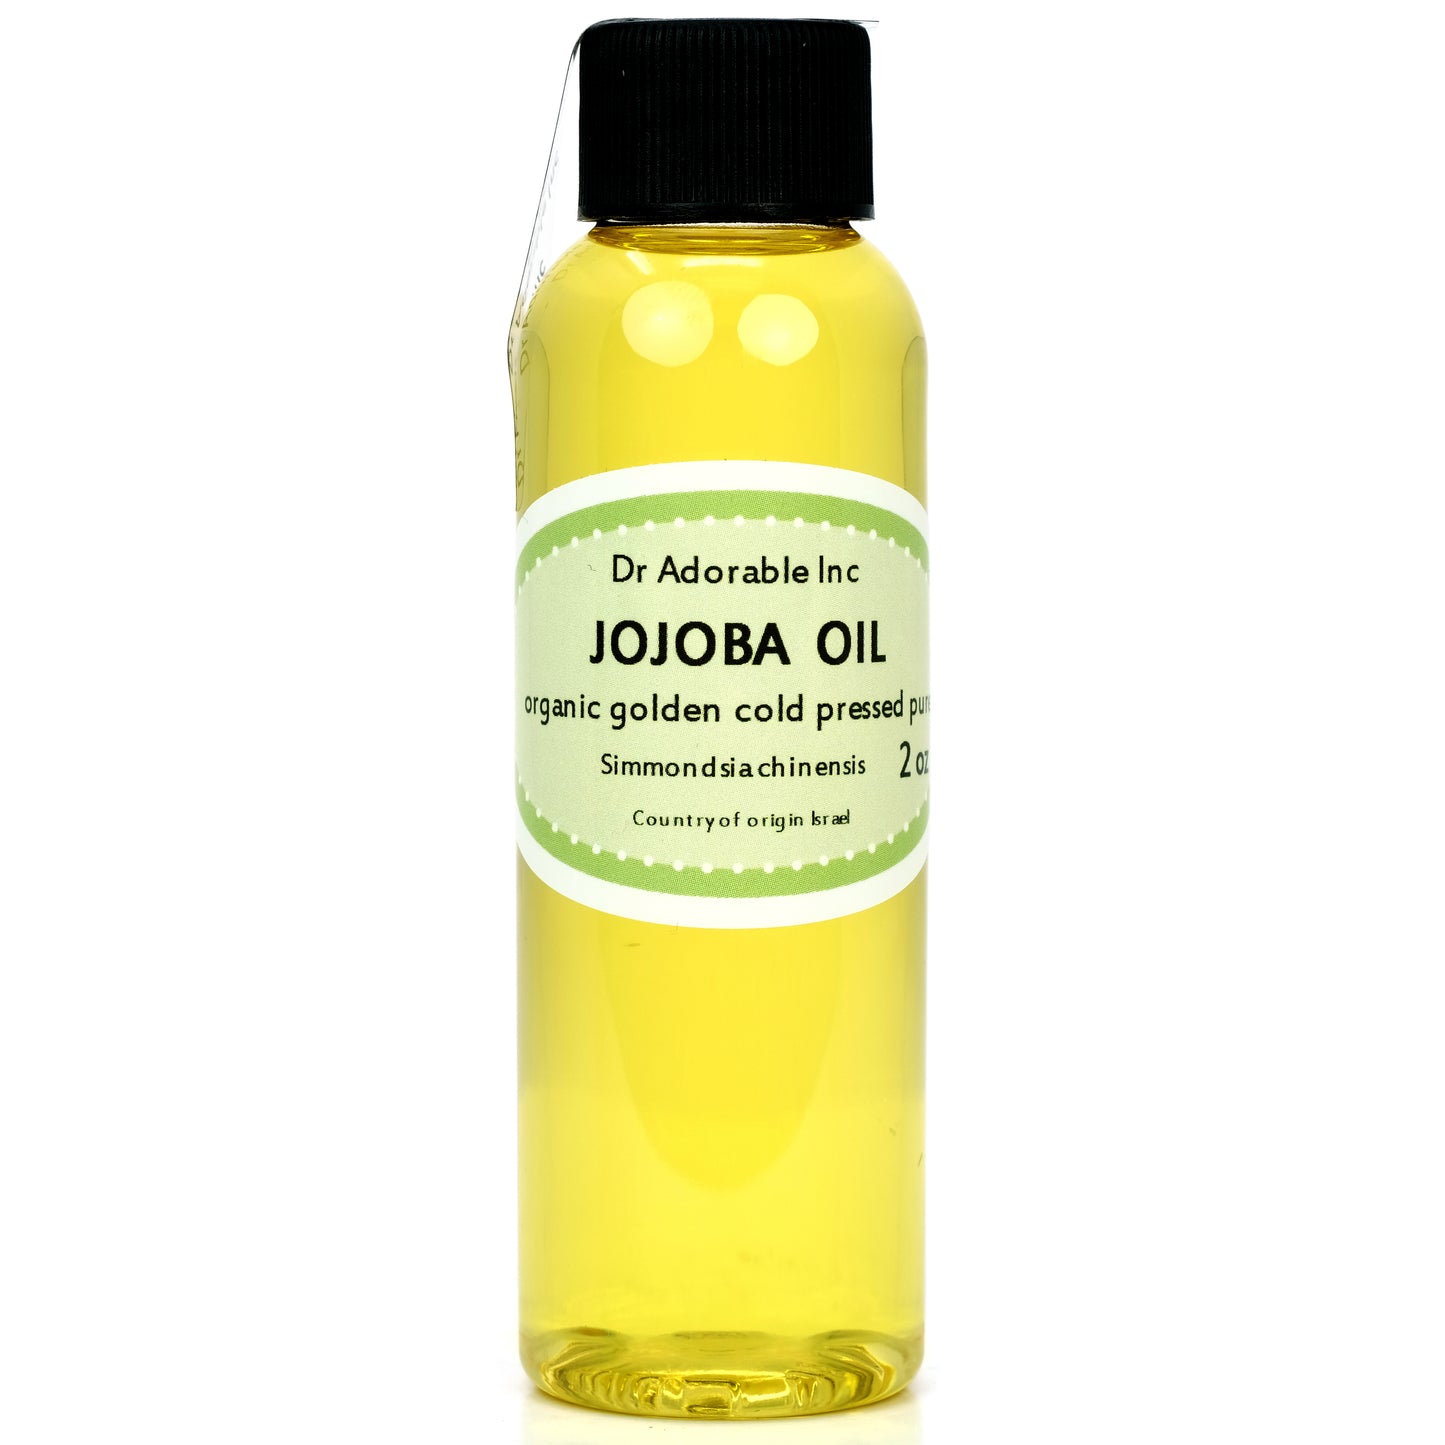 Jojoba Oil Golden Unrefined - 100% Pure Natural Organic Cold Pressed